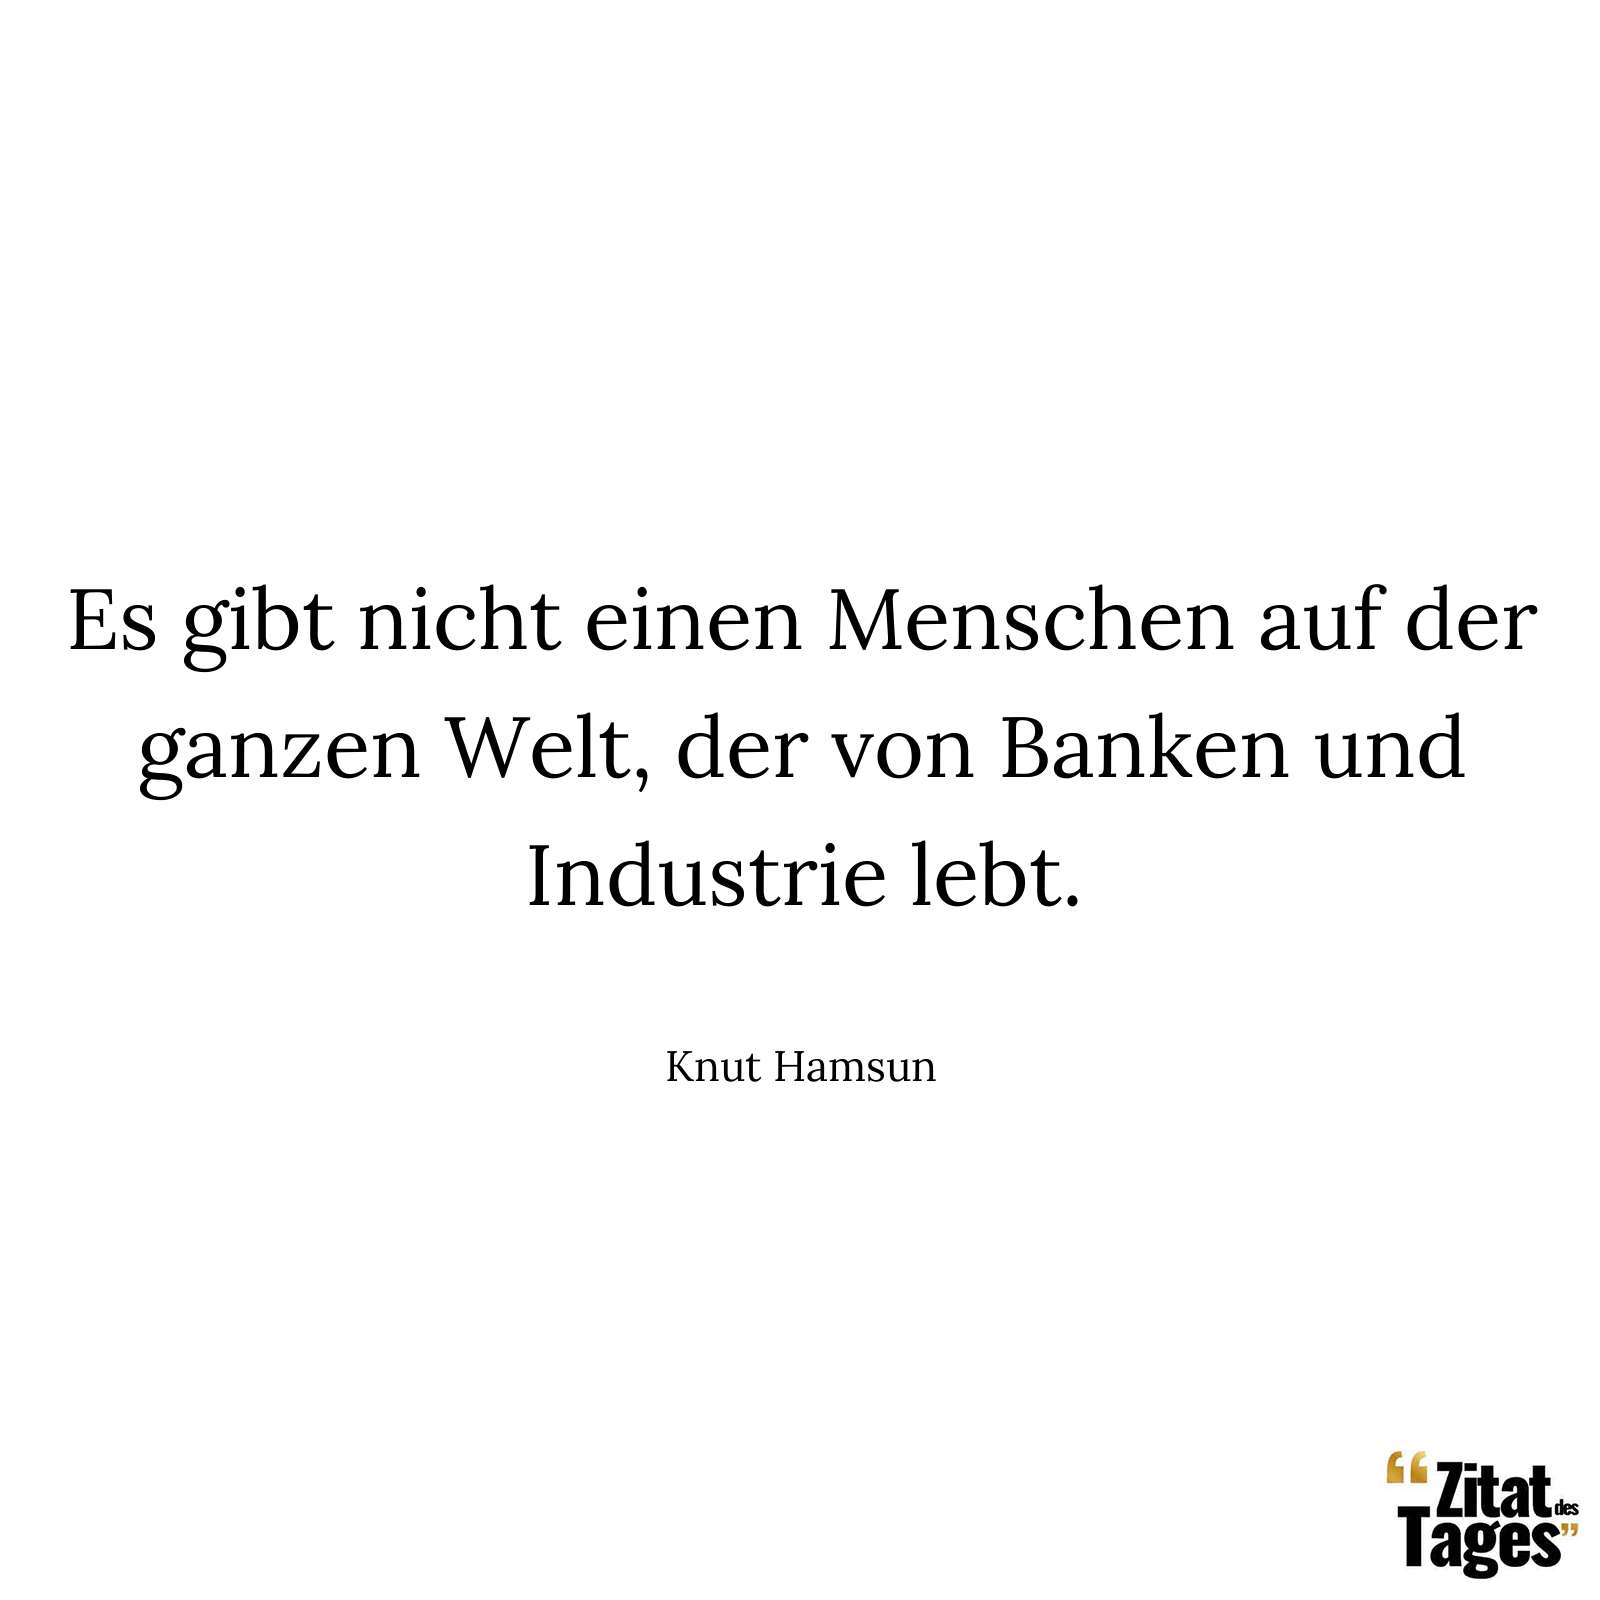 Es gibt nicht einen Menschen auf der ganzen Welt, der von Banken und Industrie lebt. - Knut Hamsun